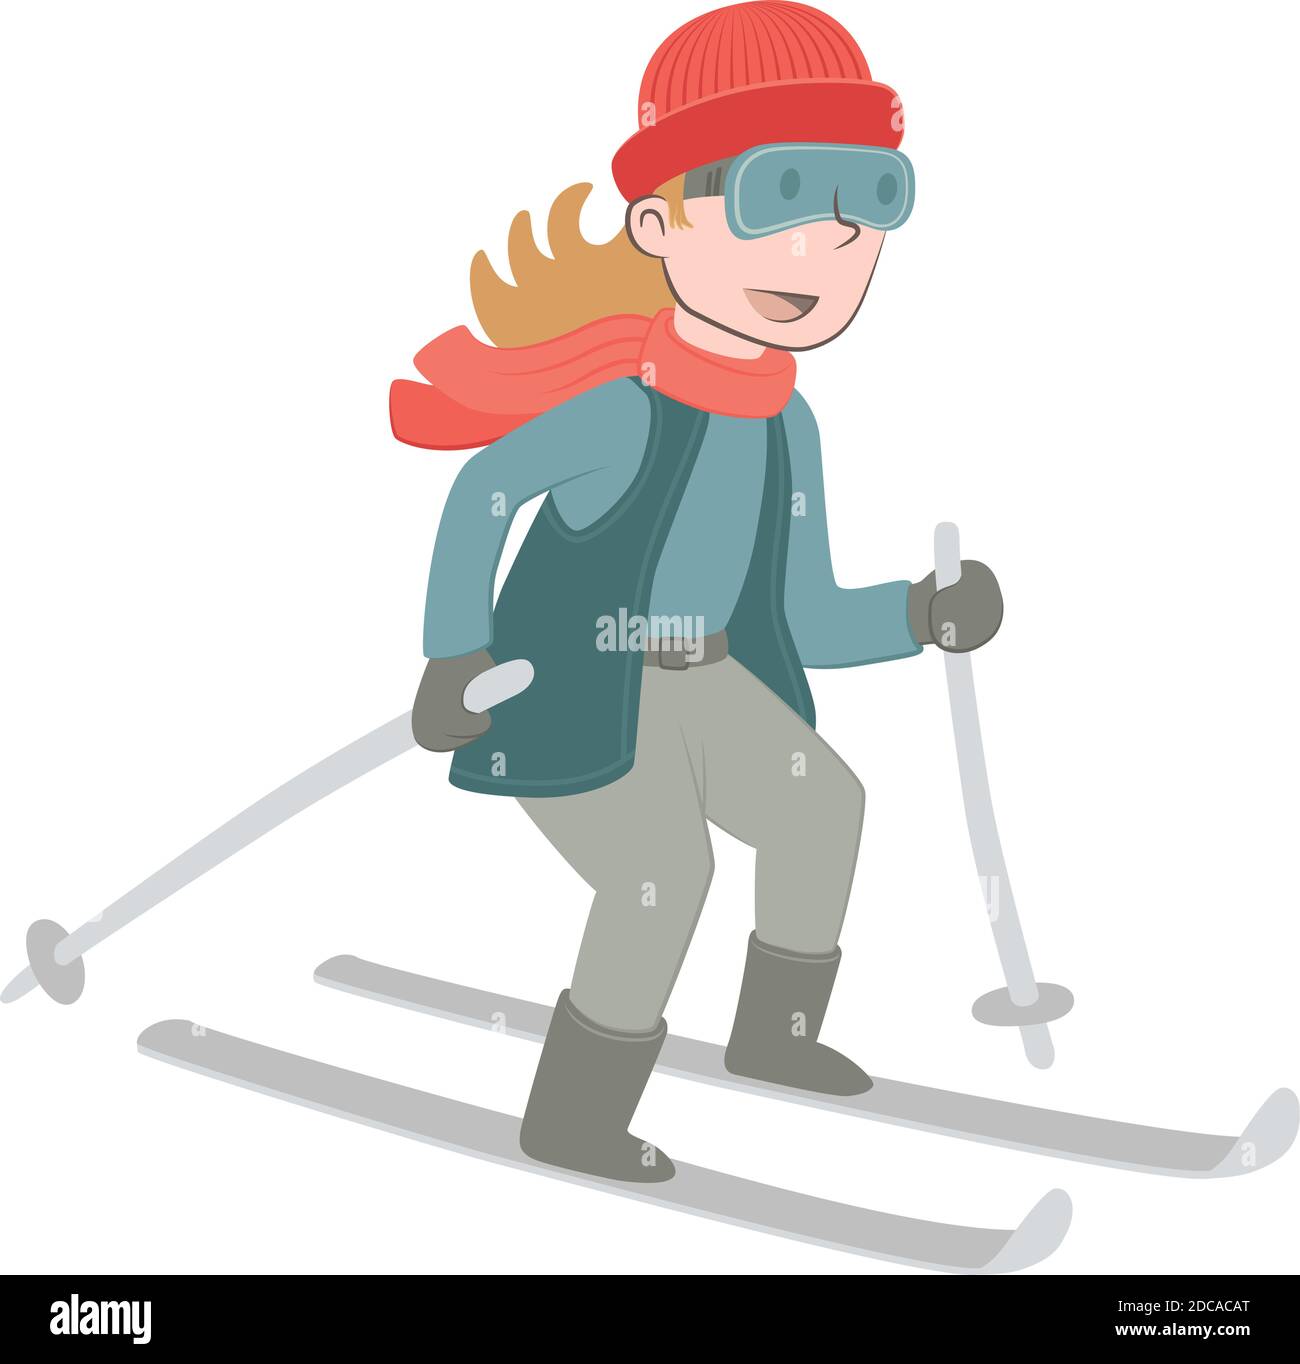 Illustration de style rétro d'une fille skant dans la neige. Illustration de Vecteur